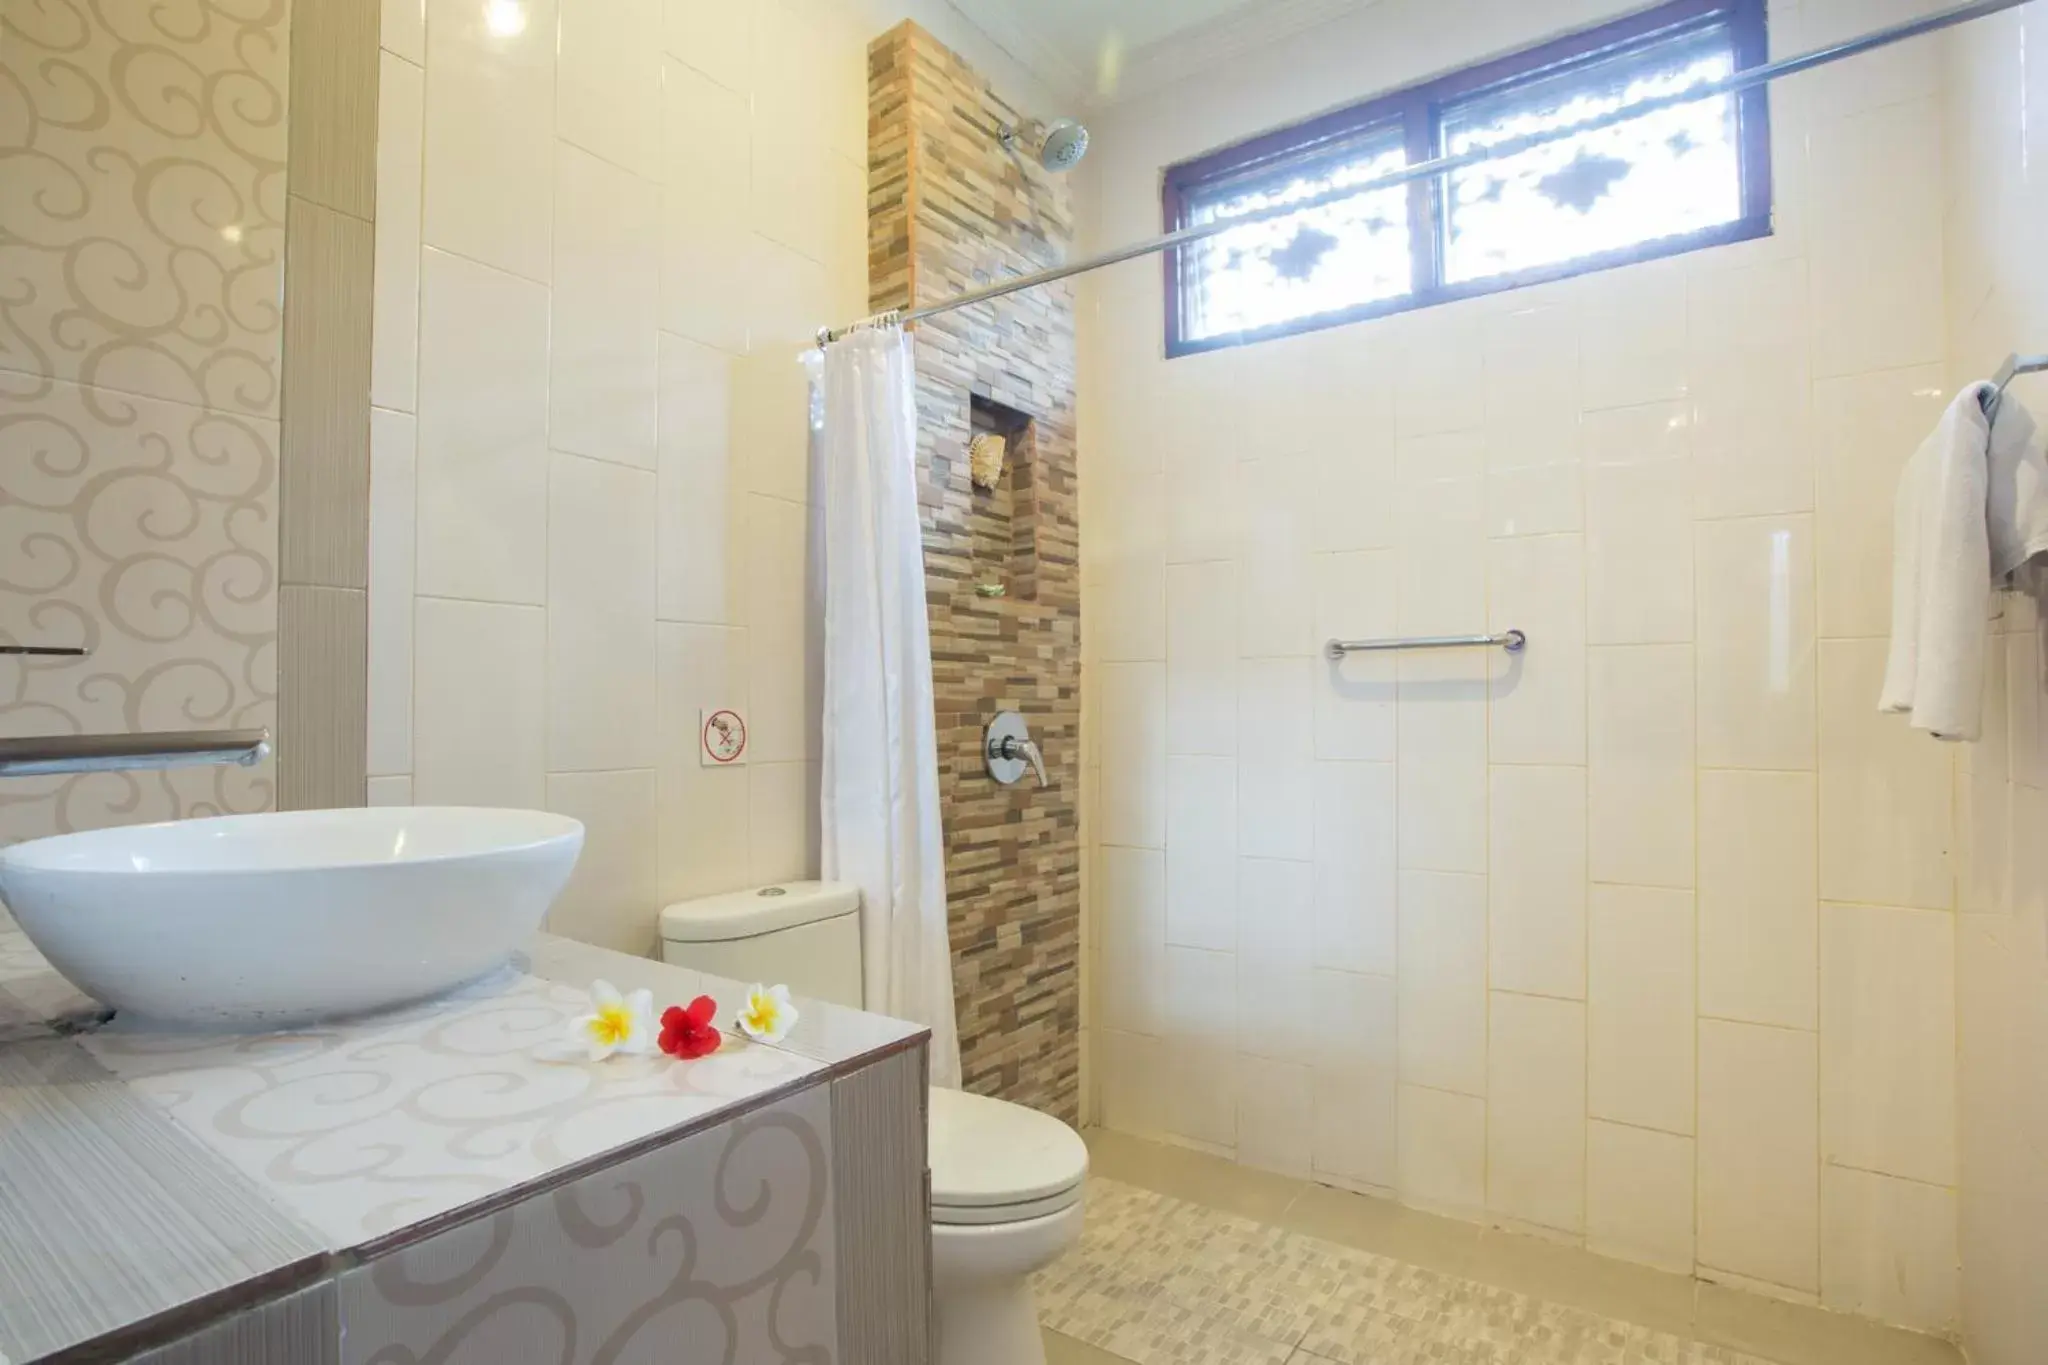 Bathroom in Sinar Bali Hotel